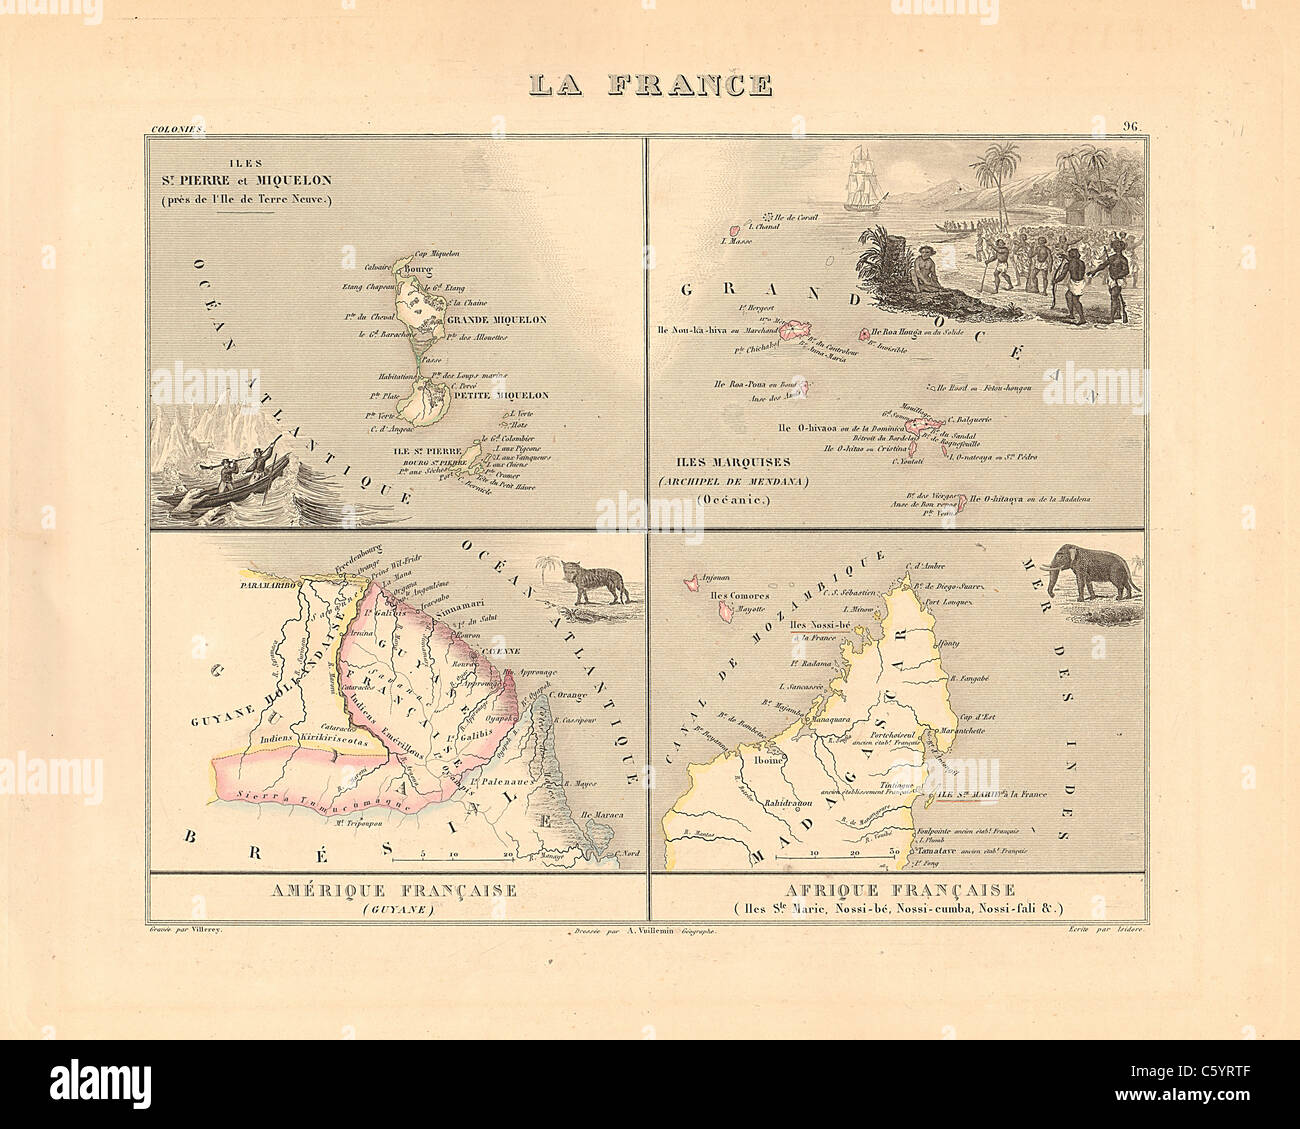 La France, Kolonien - Antiquarische Karte von 1858 französischen Atlas' Frankreich und seinen Kolonien" (La France et ses Kolonien) von Alexandre Vuillemin Stockfoto